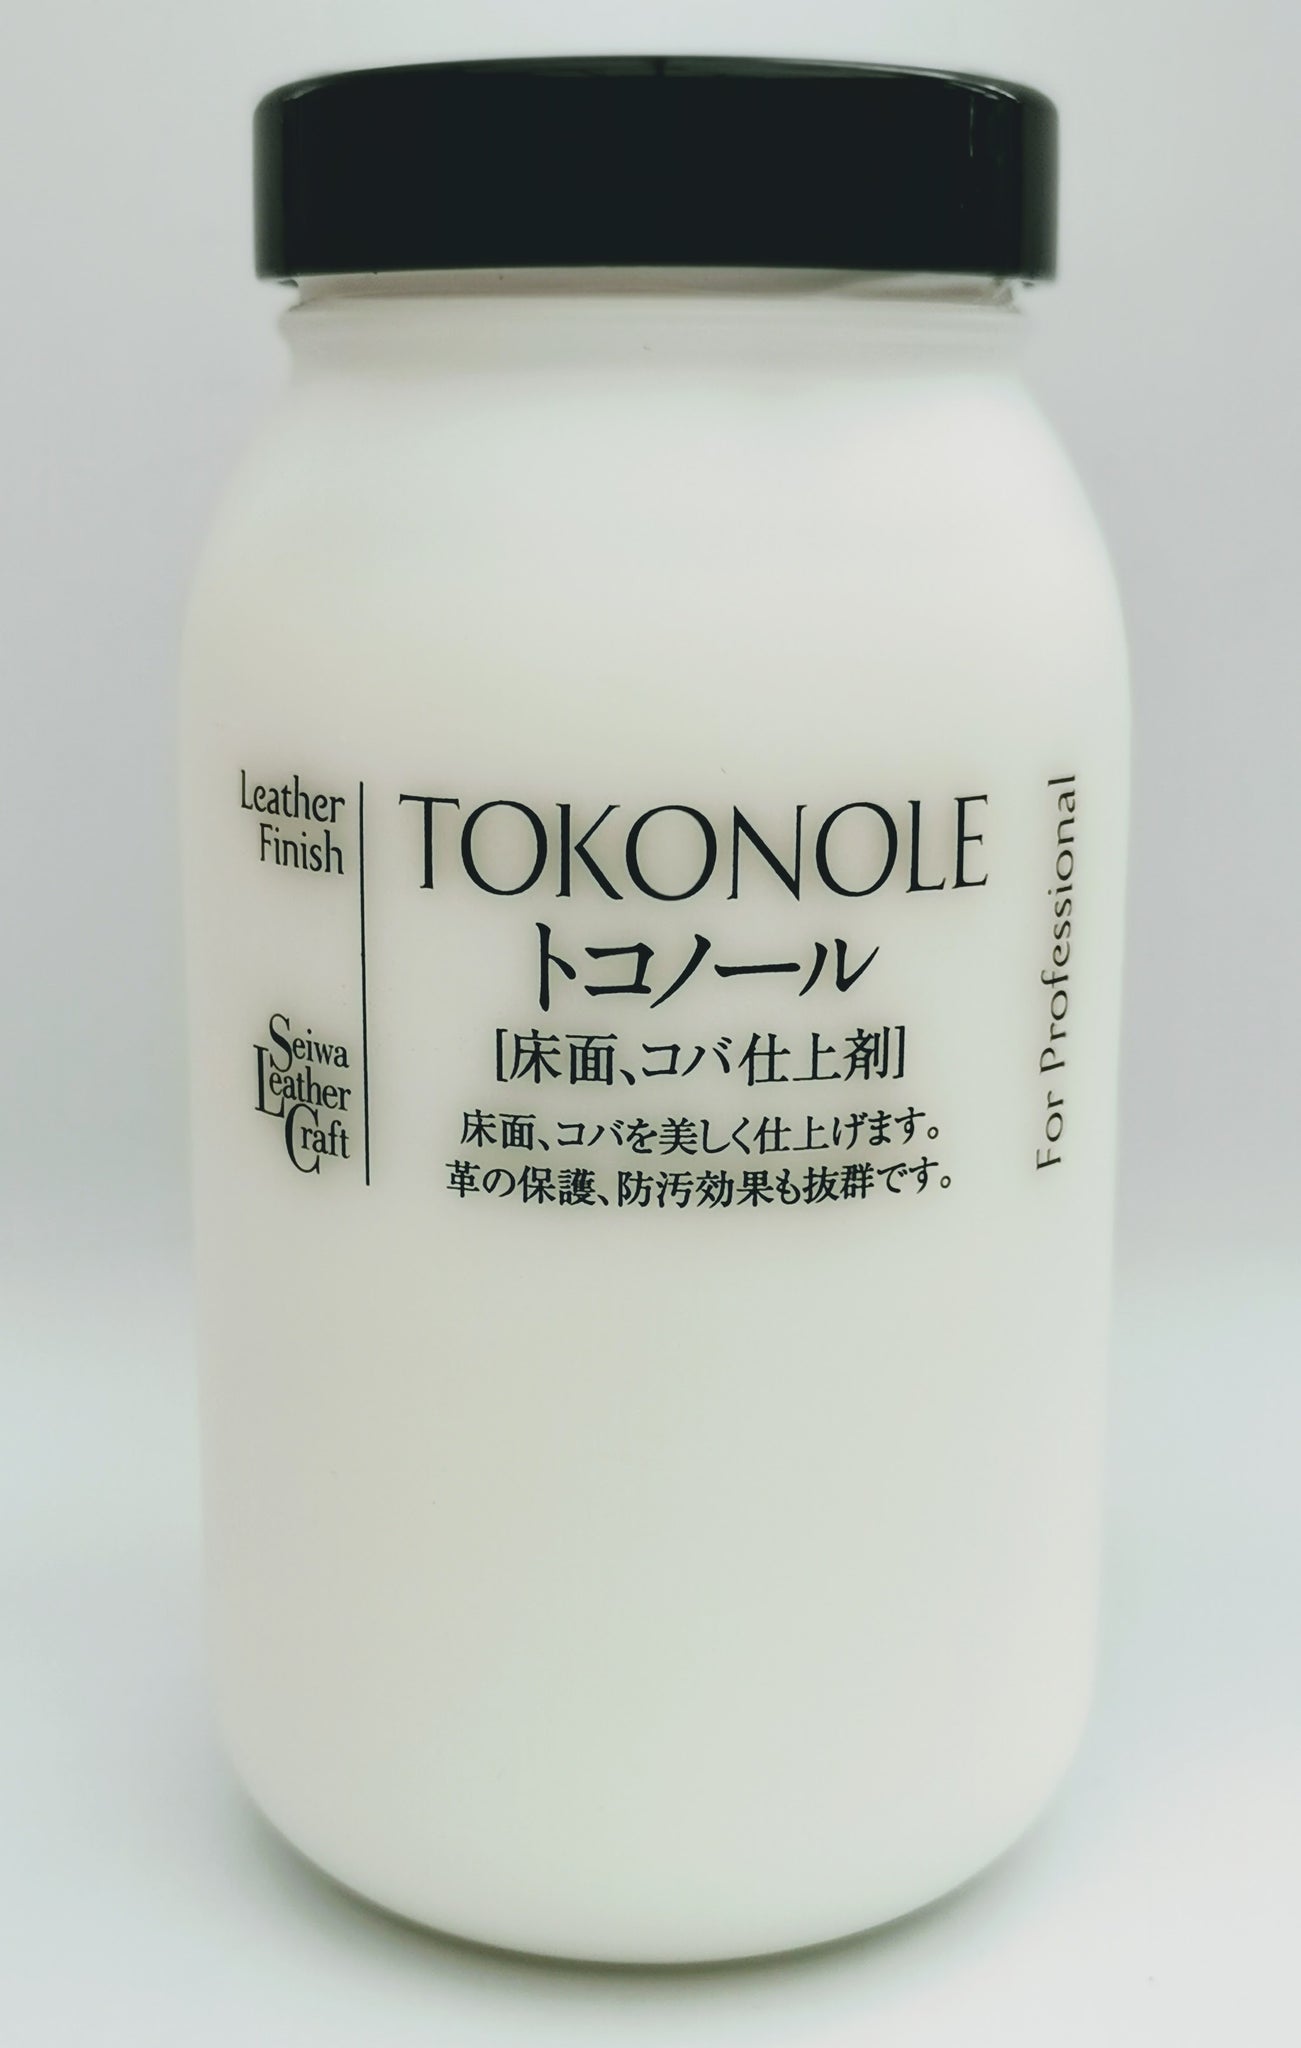 Tokonole Leather Finish Burnishing-Gum Clear 120g